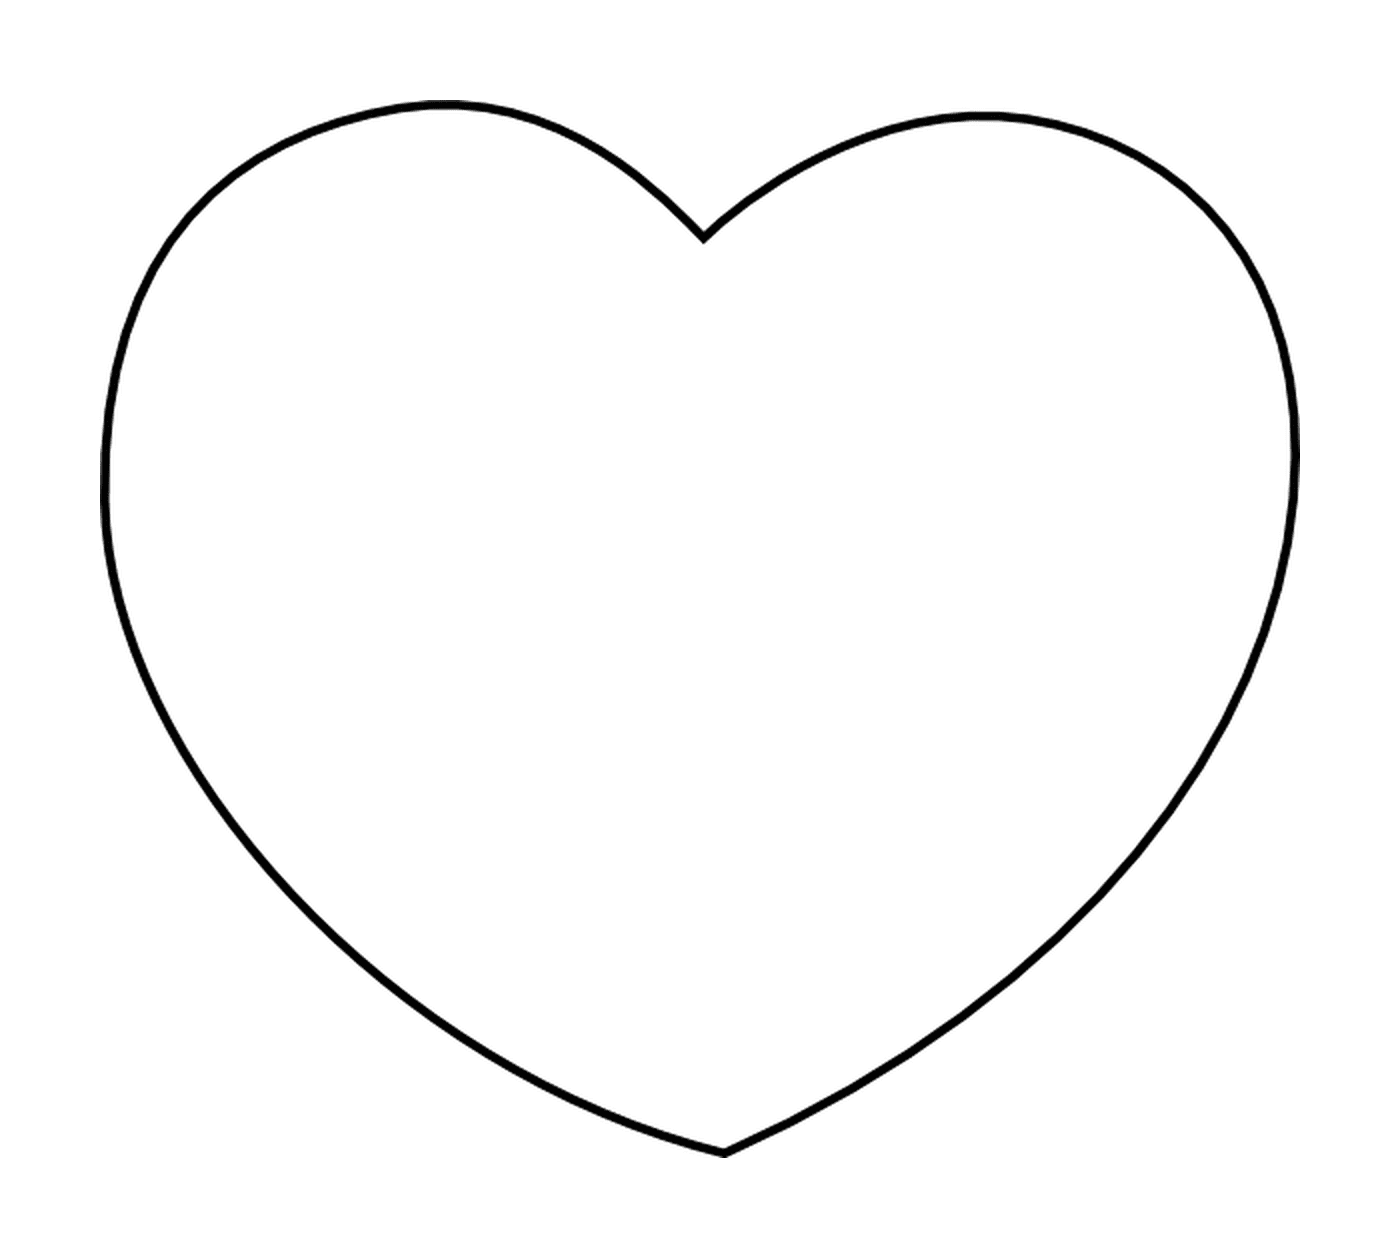  A heart 